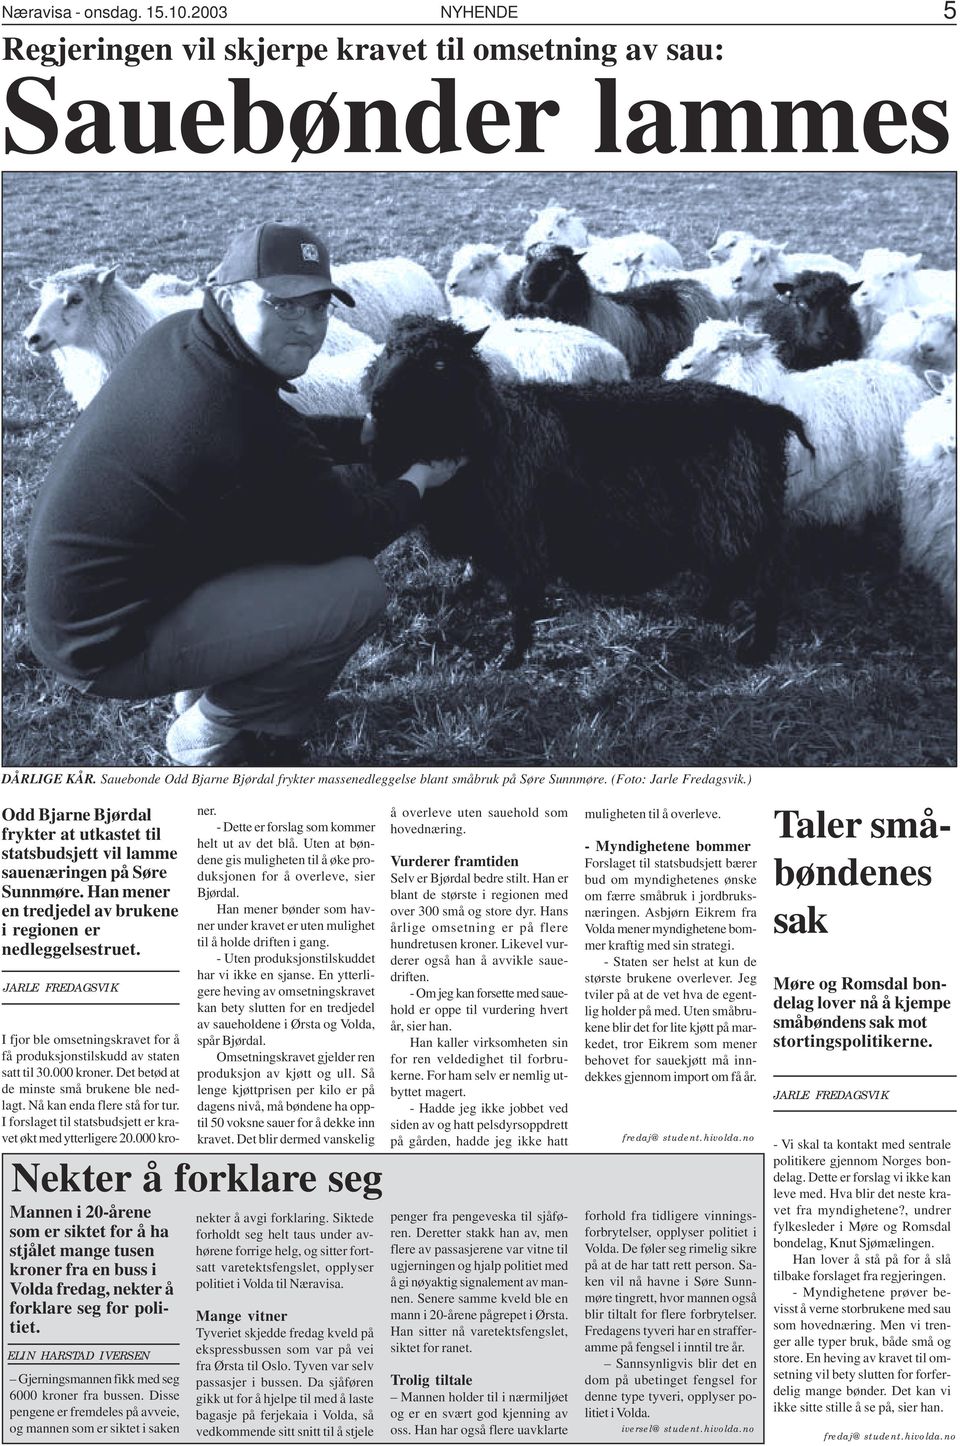 ) Odd Bjarne Bjørdal frykter at utkastet til statsbudsjett vil lamme sauenæringen på Søre Sunnmøre. Han mener en tredjedel av brukene i regionen er nedleggelsestruet.